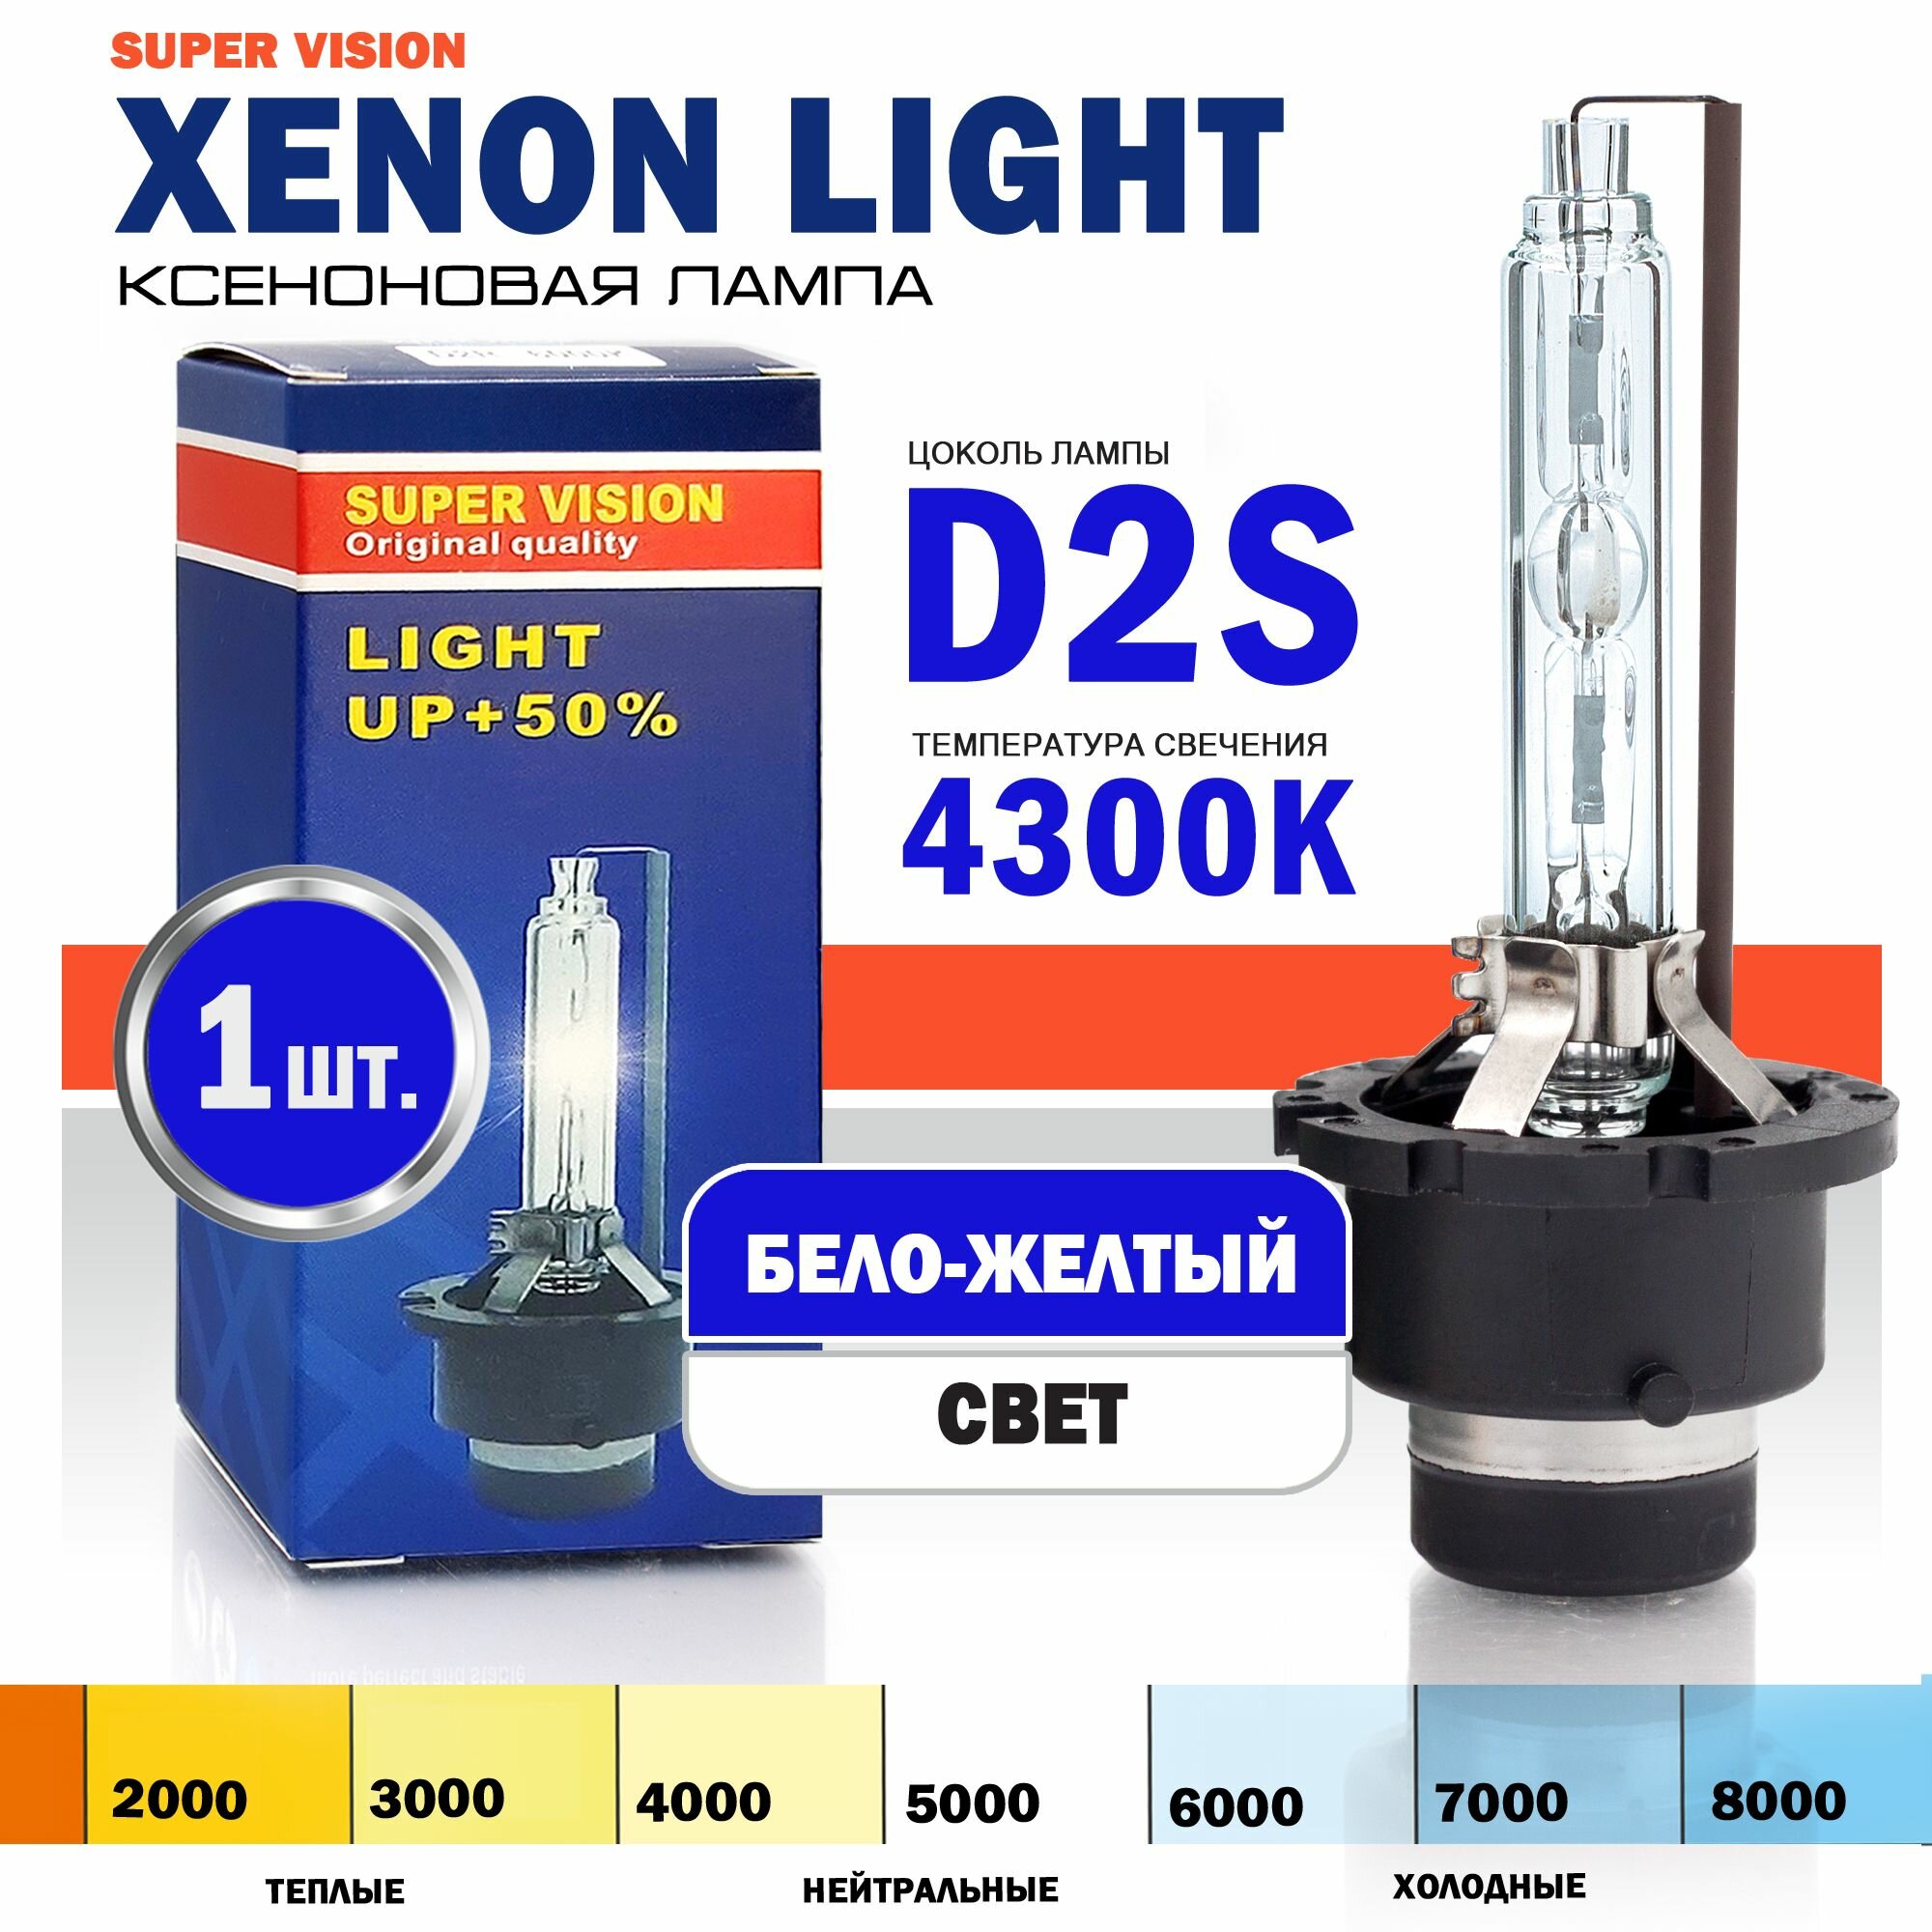 Ксеноновая лампа Xenon Light D2S 4300K Super Vision для автомобиля штатный ксенон, питание 12V, мощность 35W, 1 штука